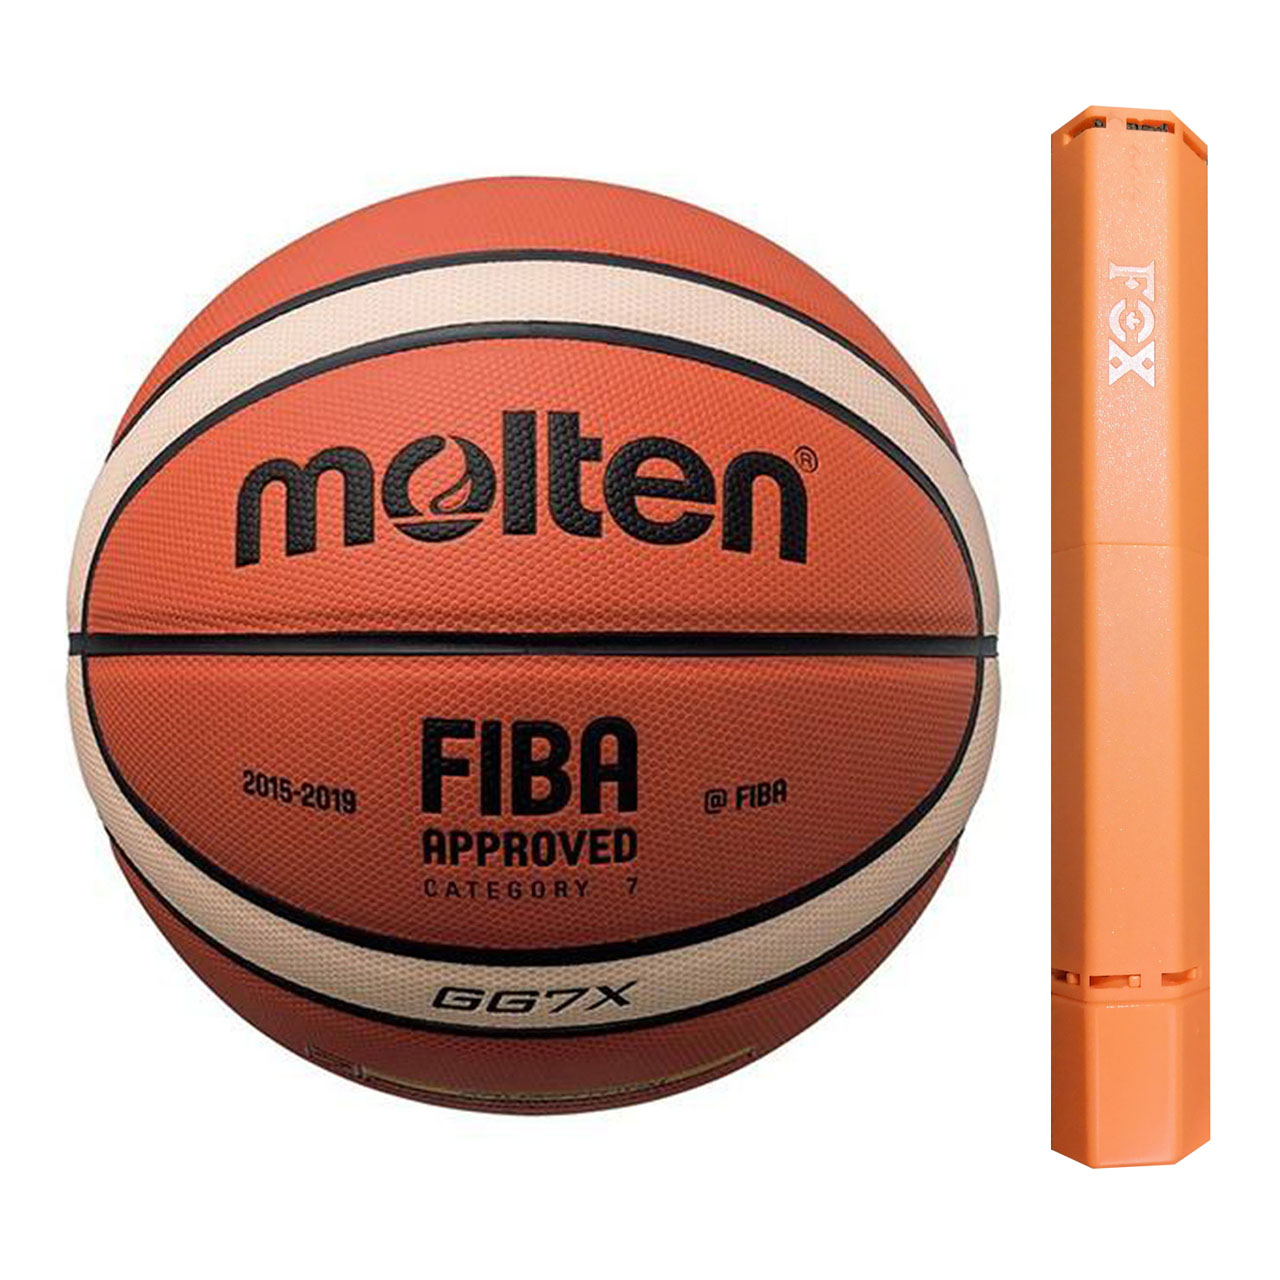 توپ بسکتبال مولتن مدل GG7X با تاییدیه فدراسیون به همراه تلمبه فاکس سایز 7